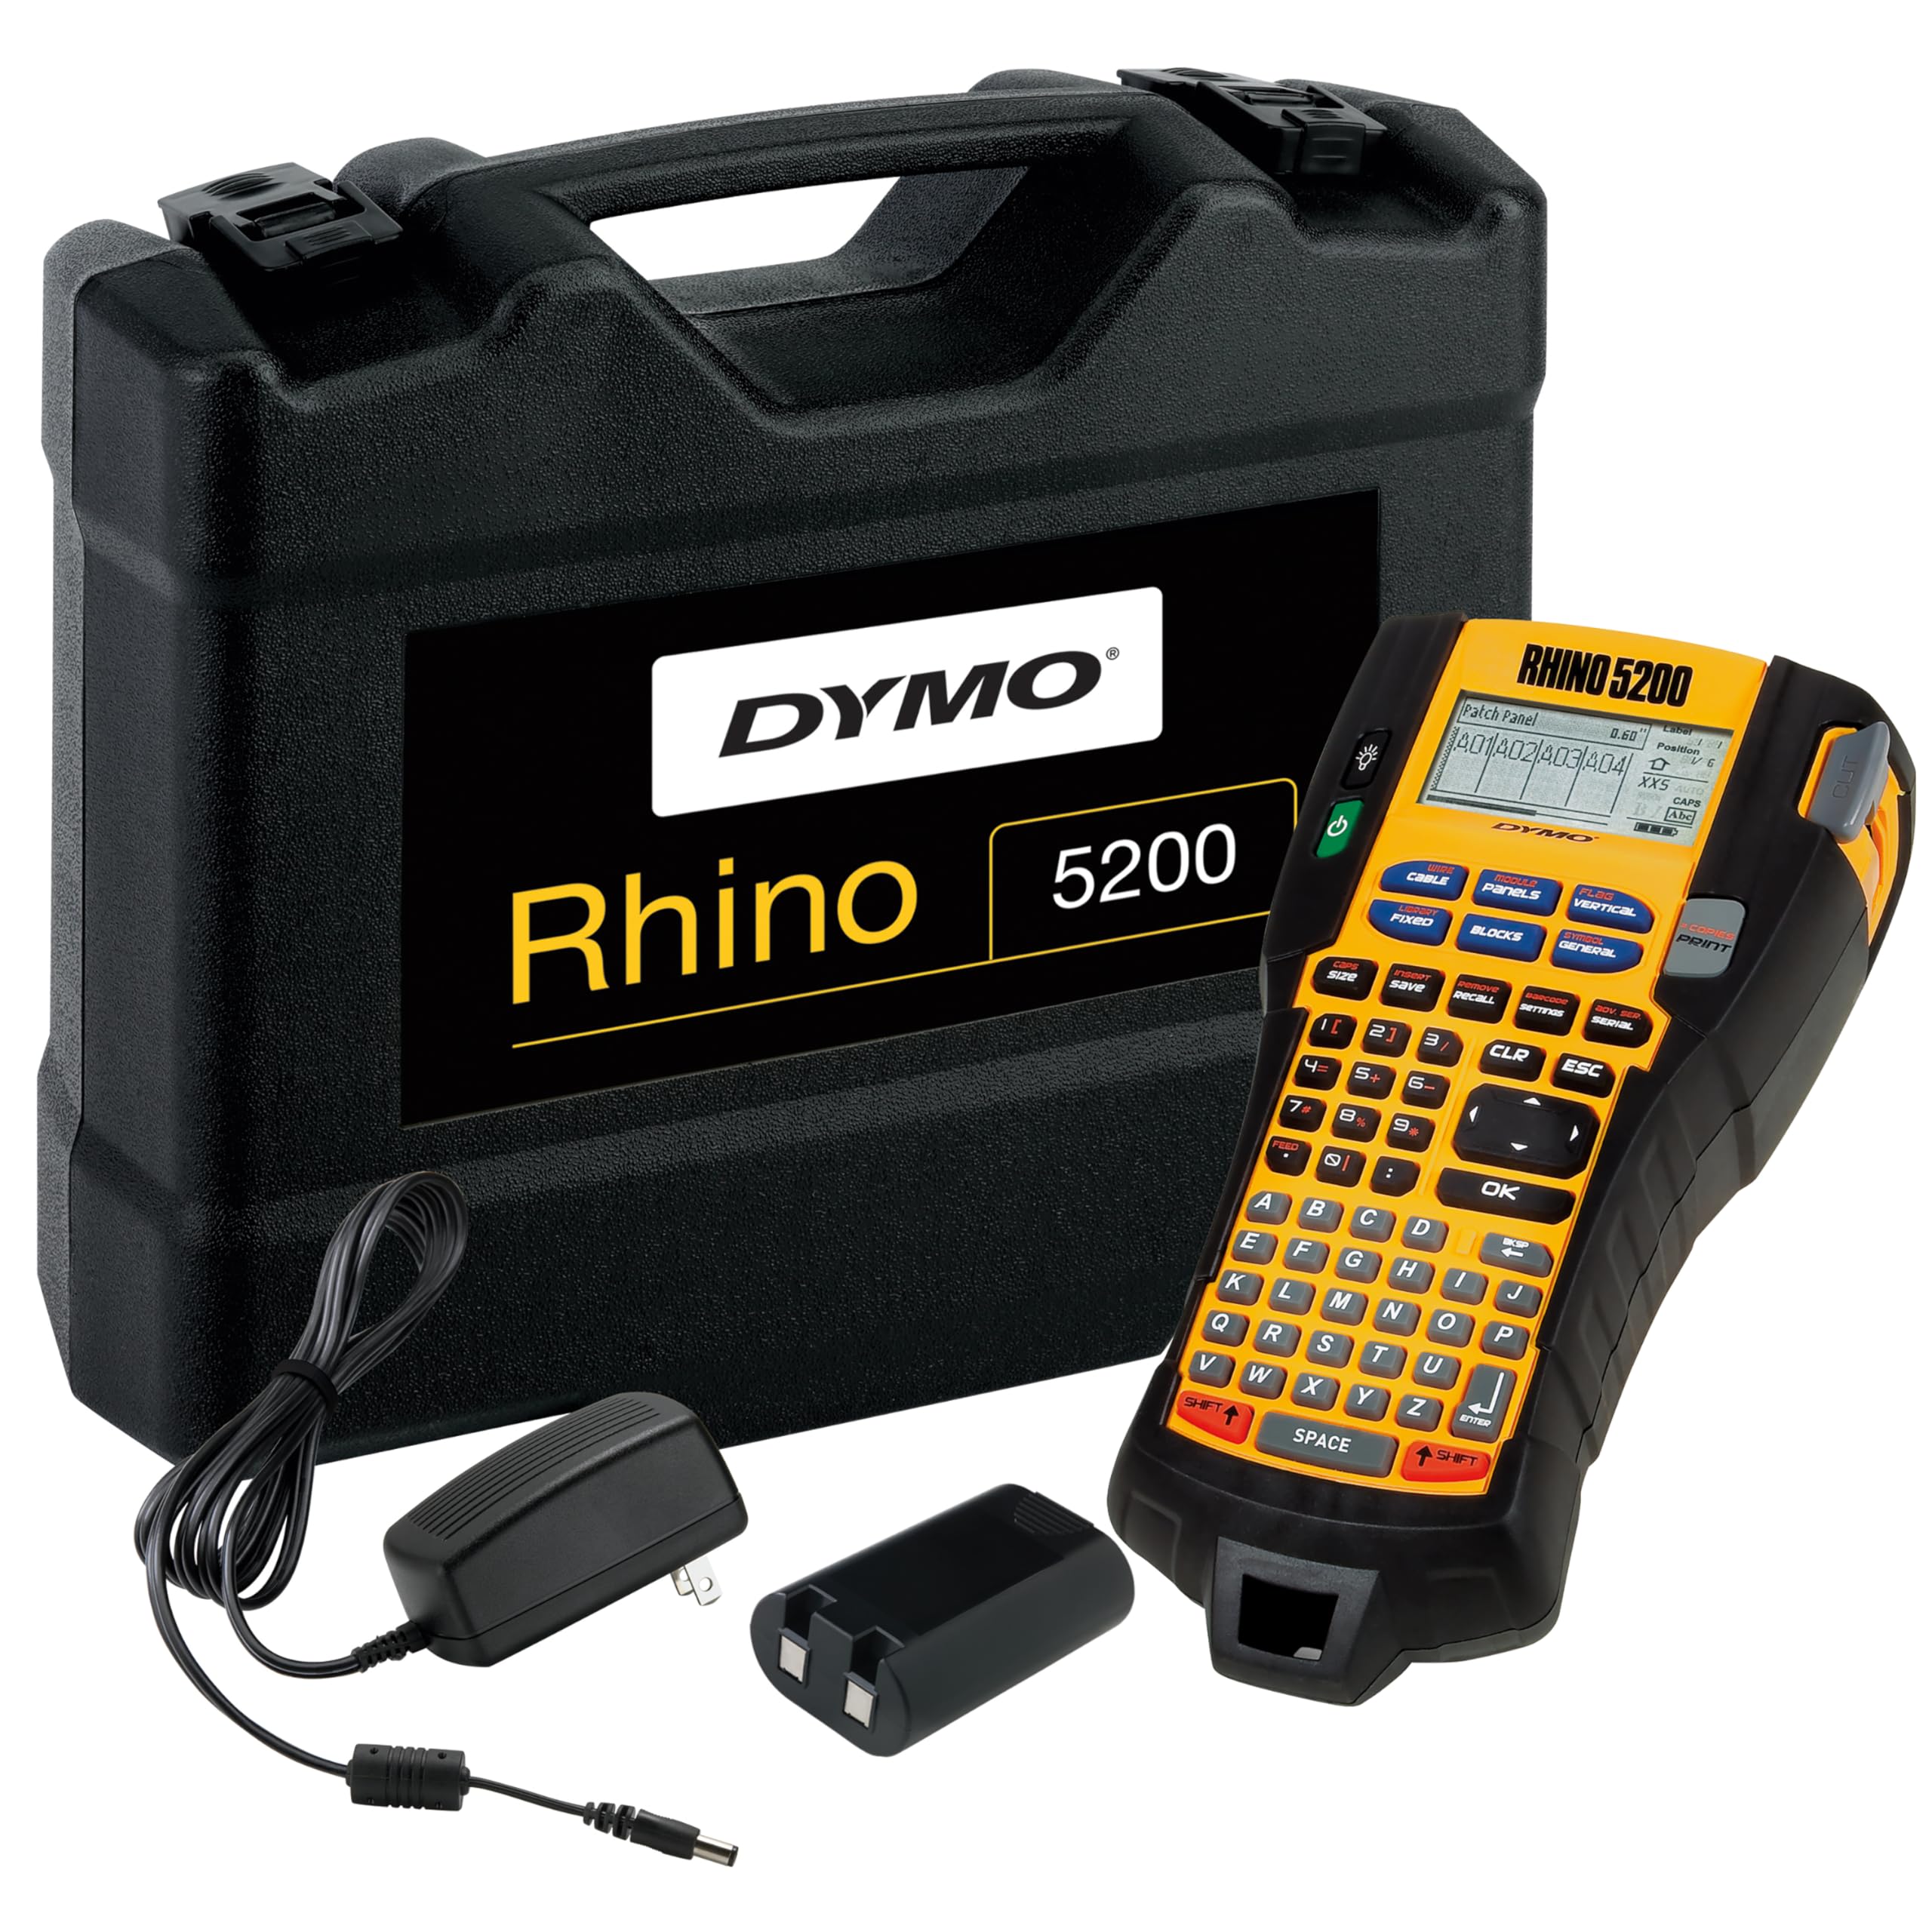 DYMO Rhino 5200 Tragbares Industrielles Beschriftungsgerät, ABC-Tastatur und Großes LCD-Display, Stabiles Kunststoffgehäuse mit integrierten Gummipuffern, Gummierte Tasten mit 6 Direktzugriffstasten und 11 Funktionen